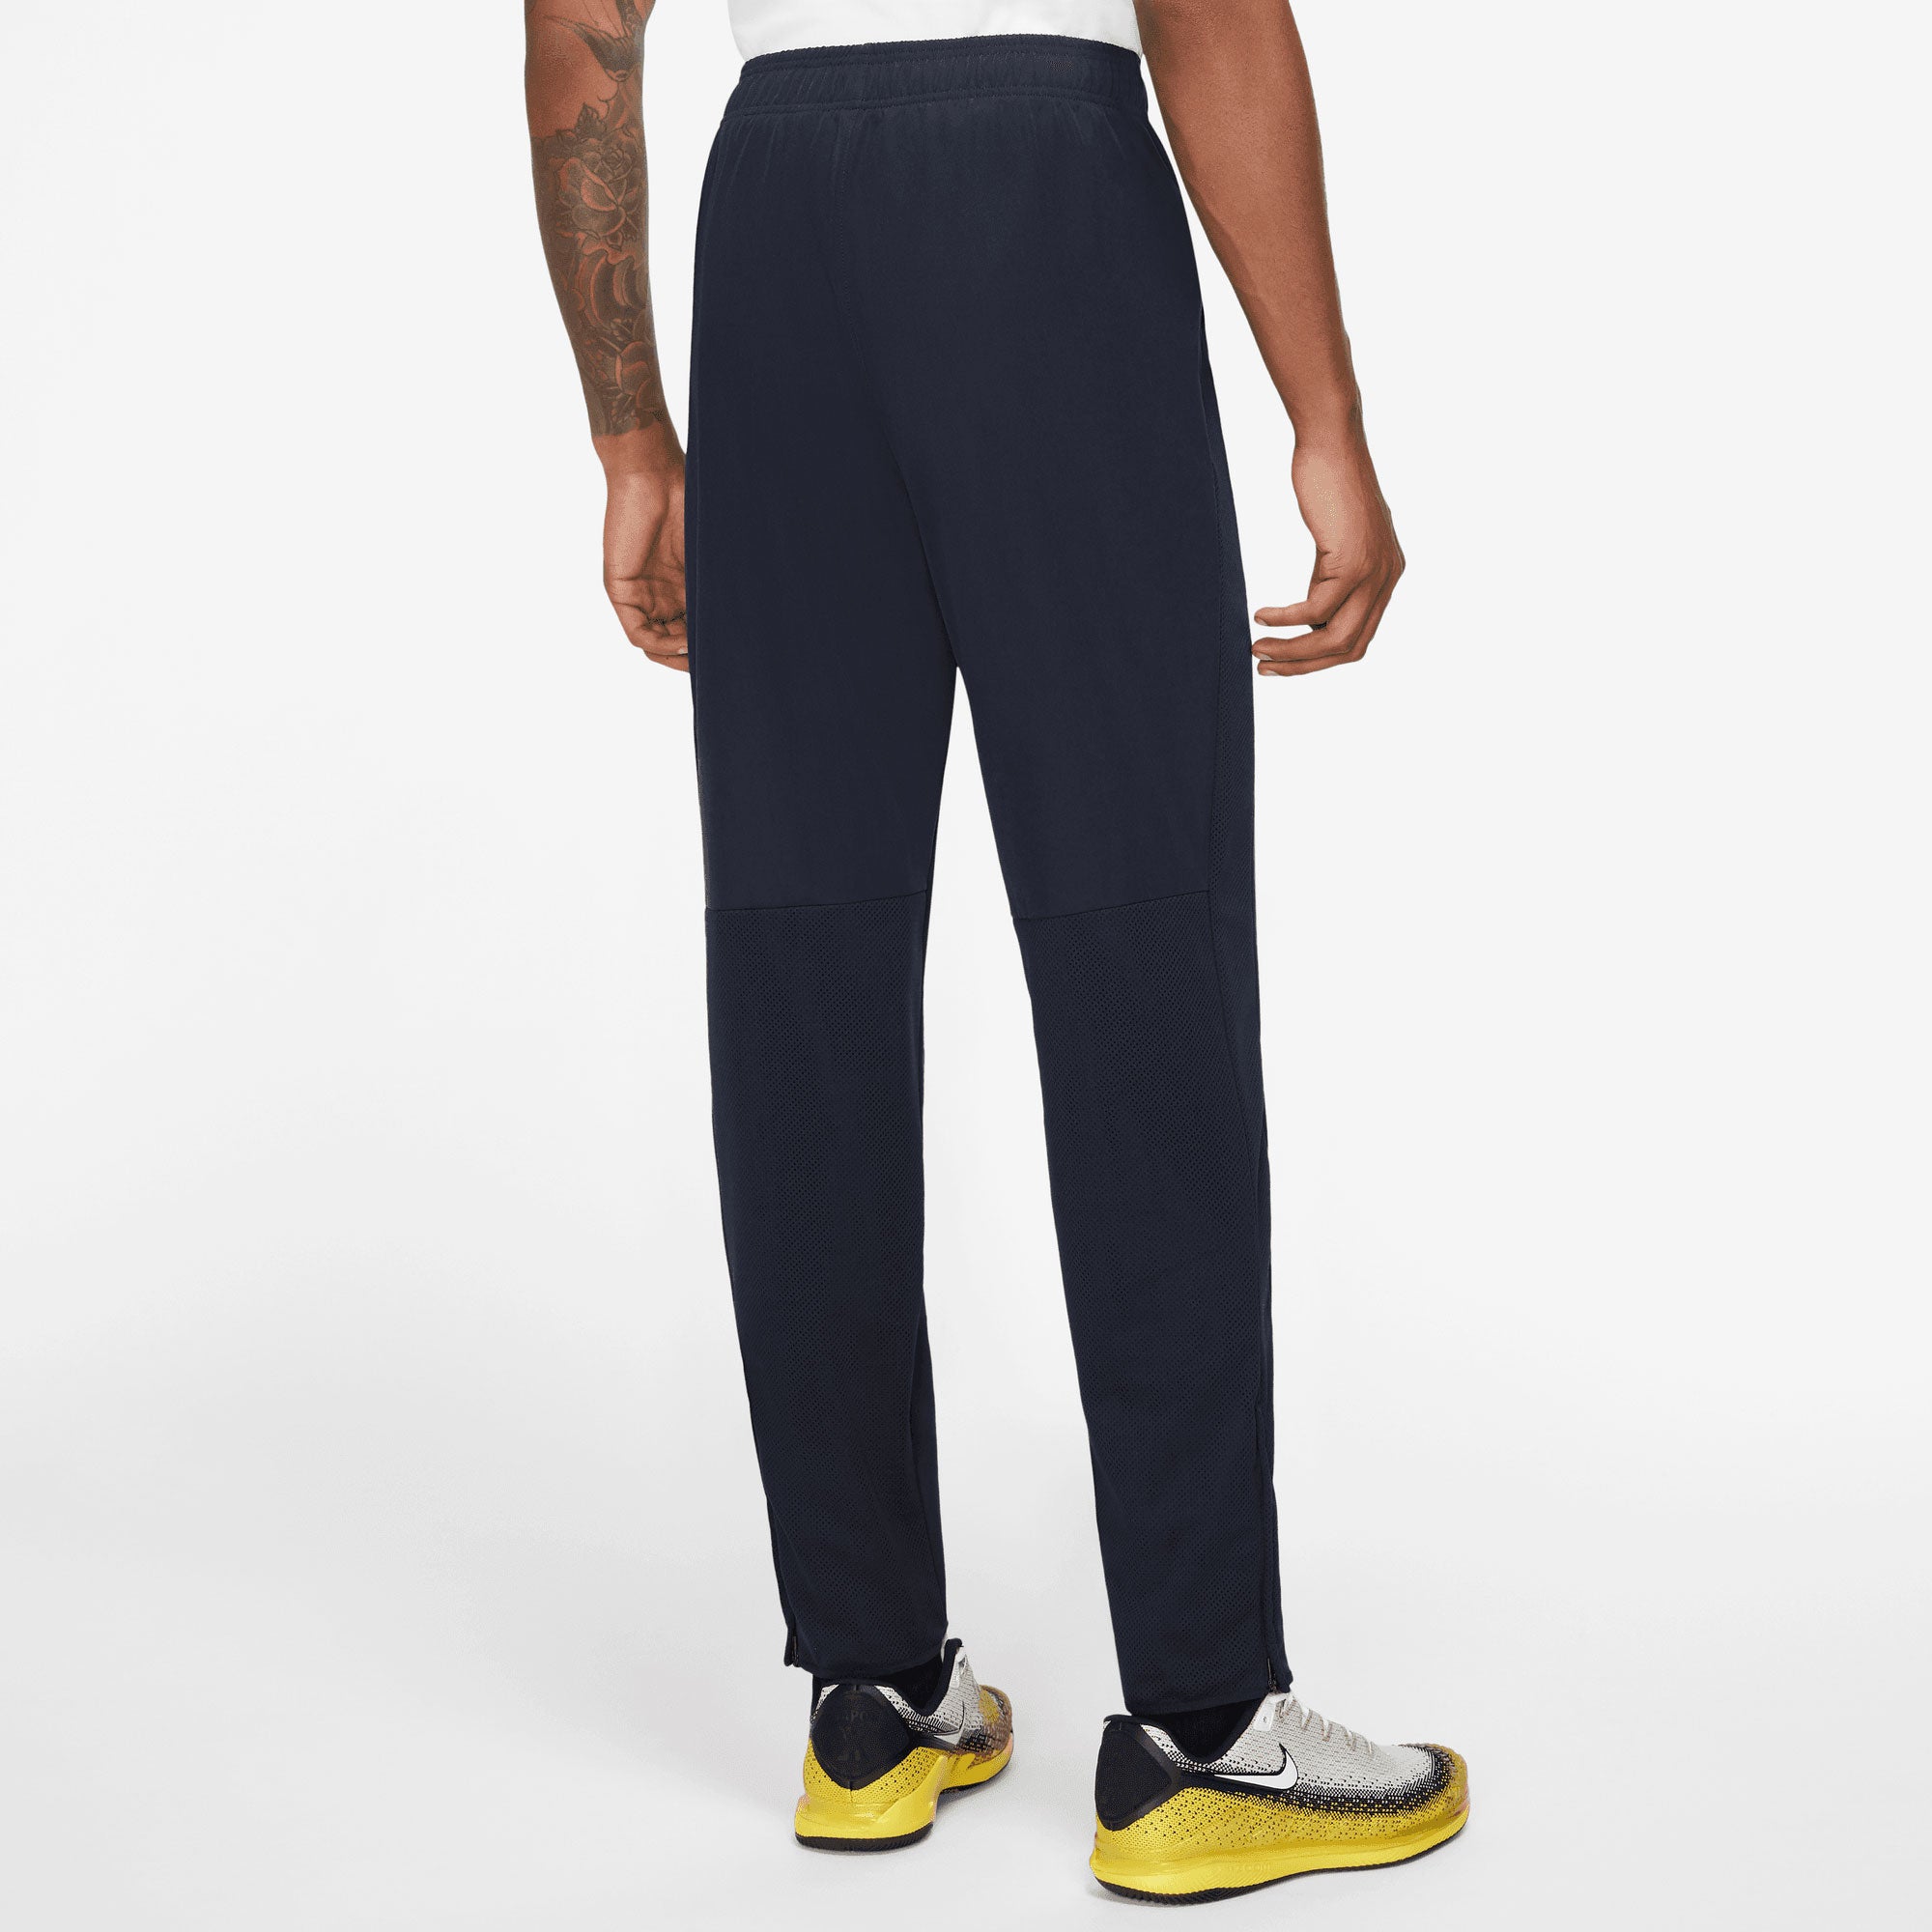 NikeCourt Heritage Men's Tennis Pants